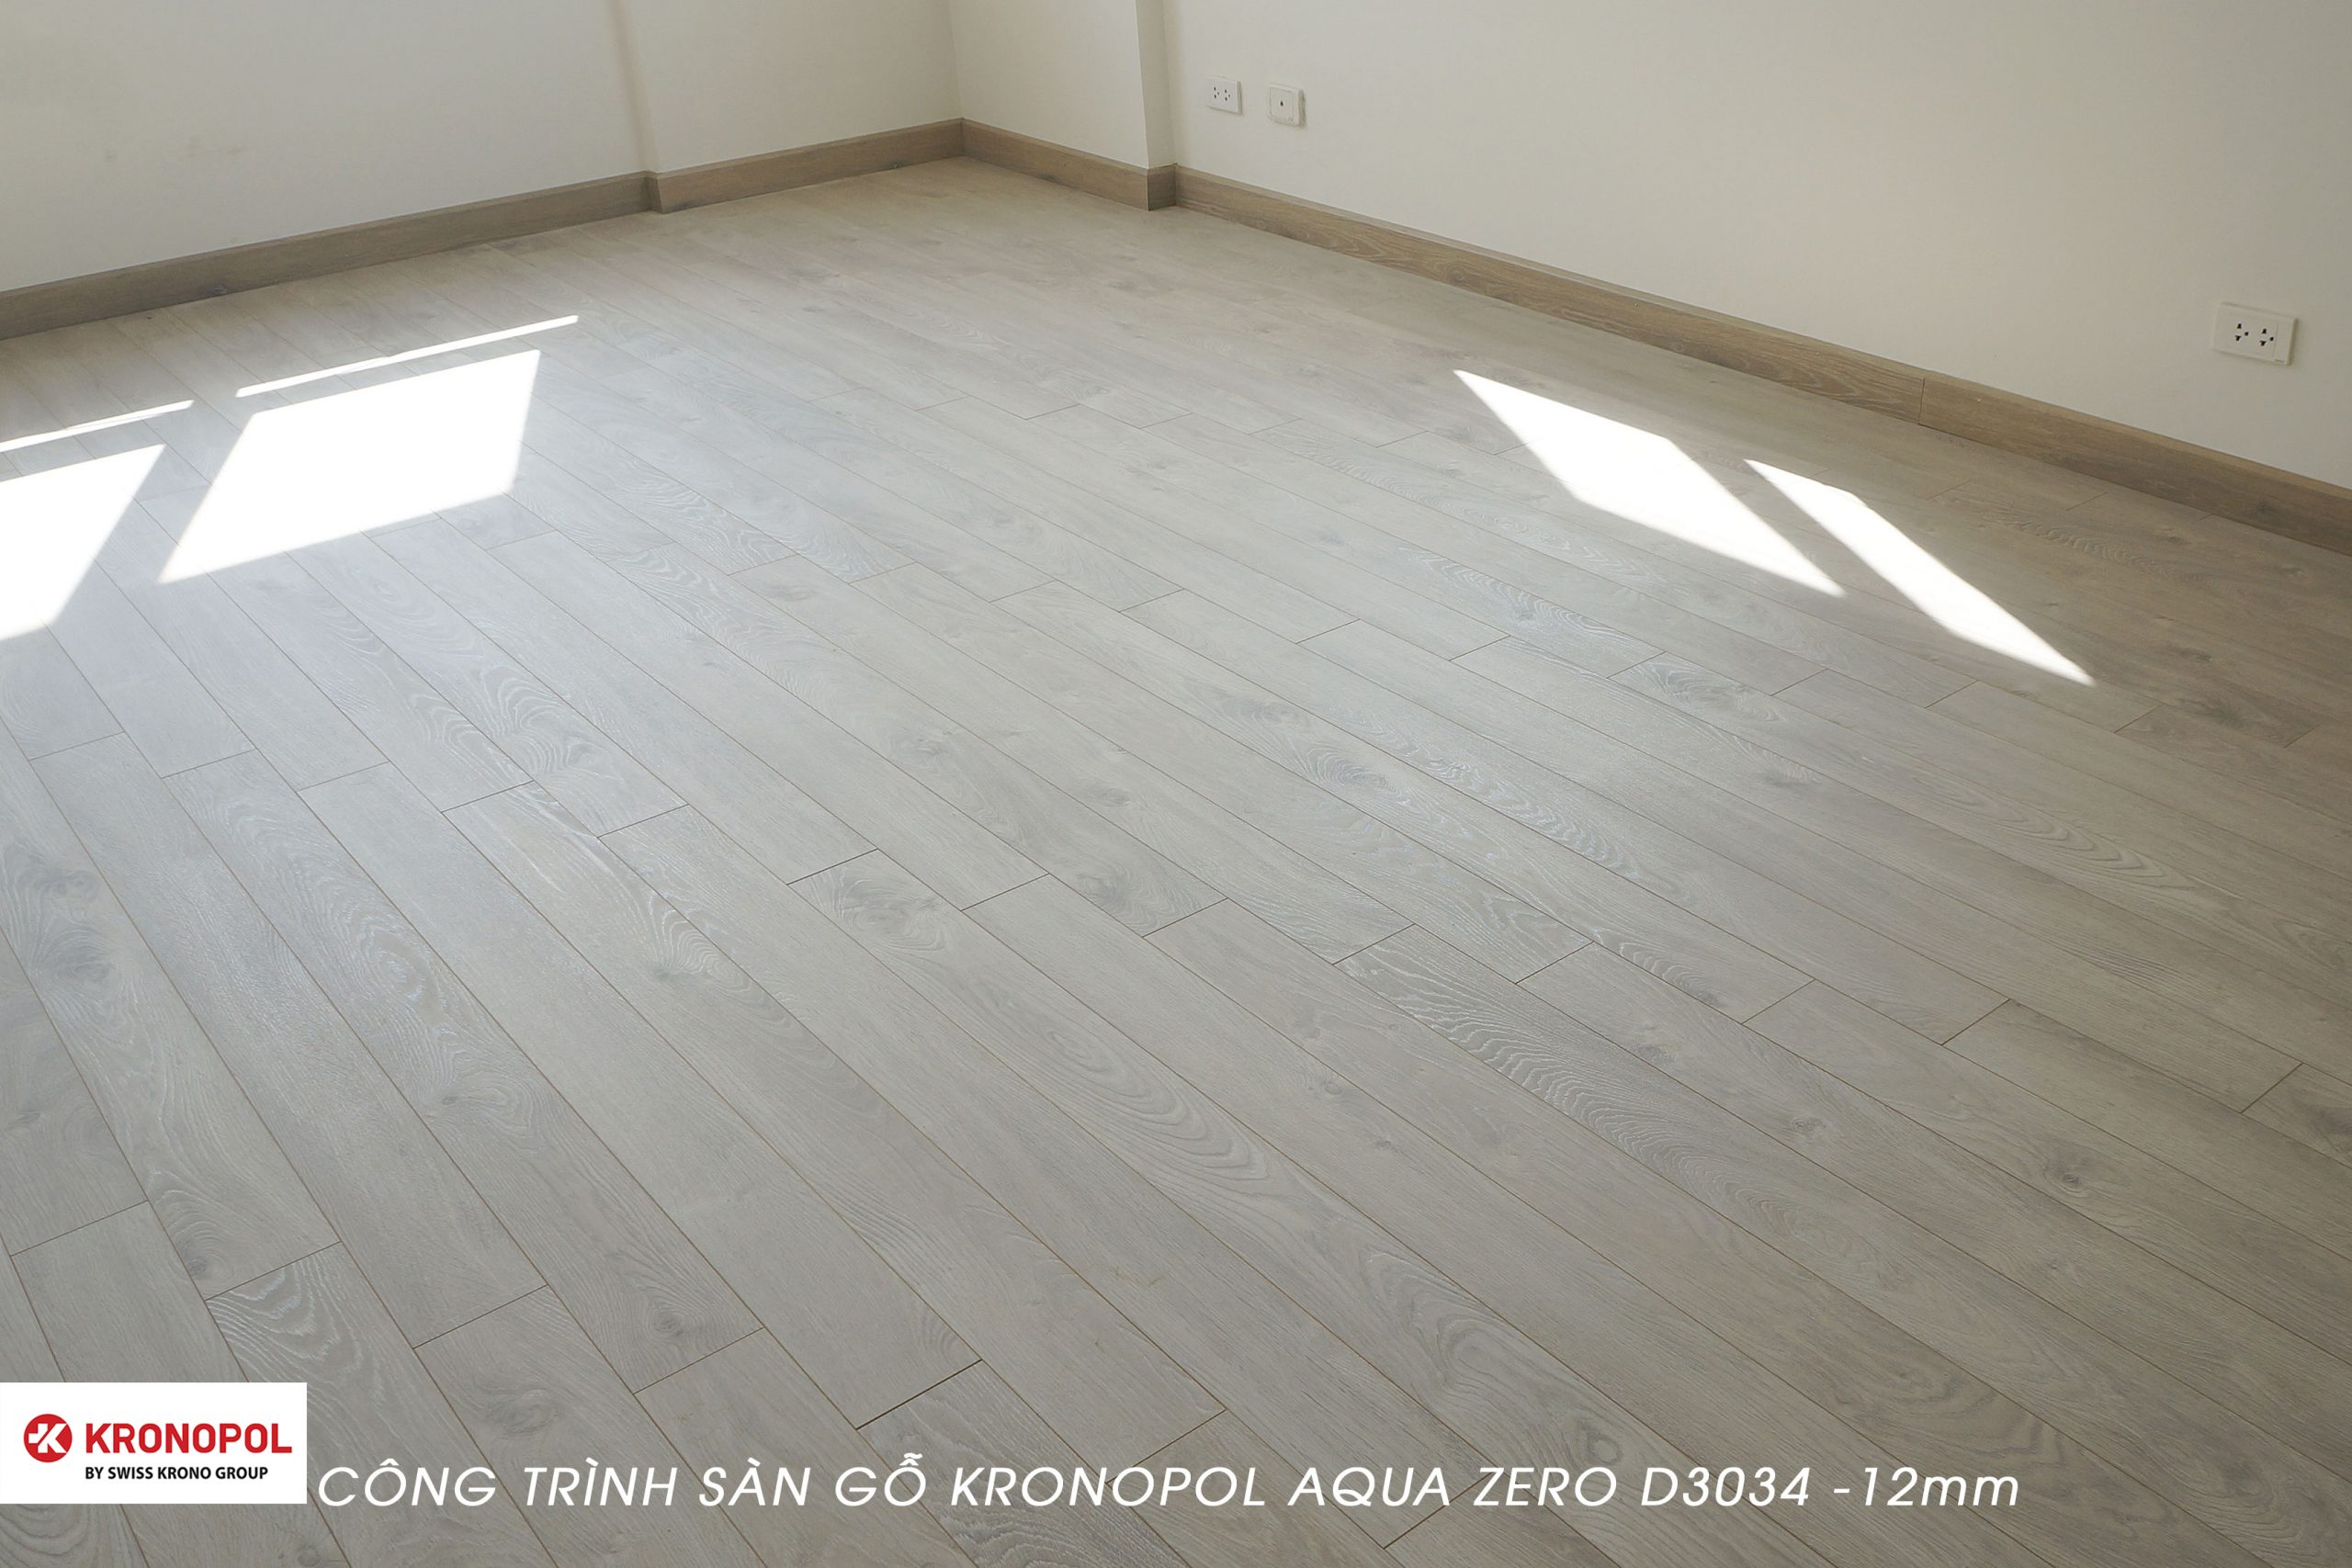 Công trình sàn gỗ Kronopol Aqua Zero D3034 tại Trung Hòa – Cầu Giấy